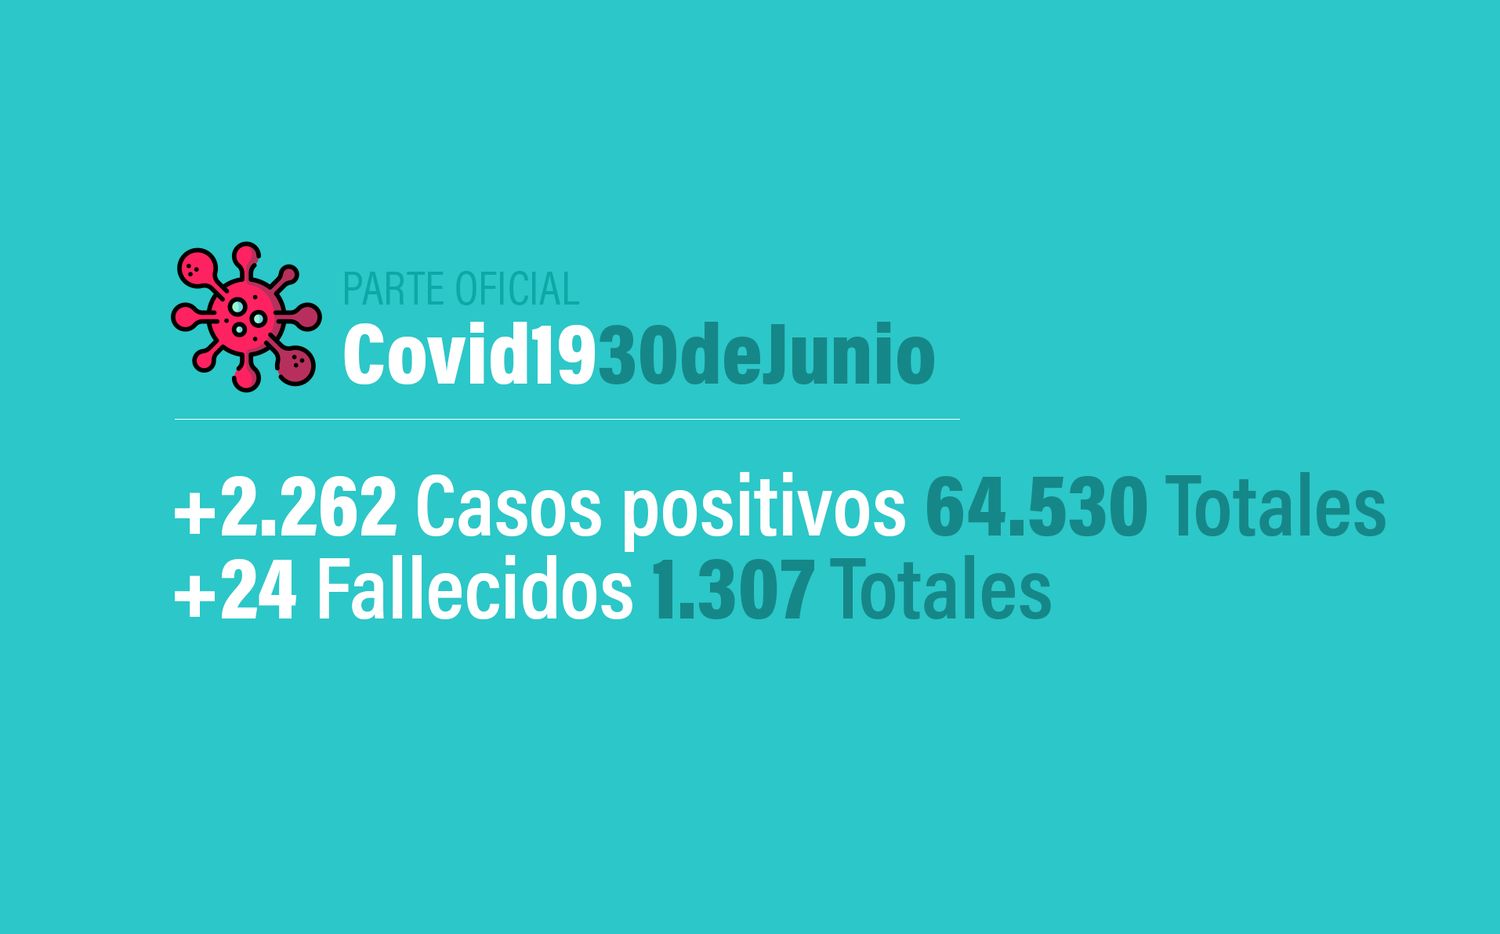 Coronavirus en Argentina: 2262 nuevos casos, 64530 confirmados, 22028 recuperados y 1307 muertes, al 30 de junio